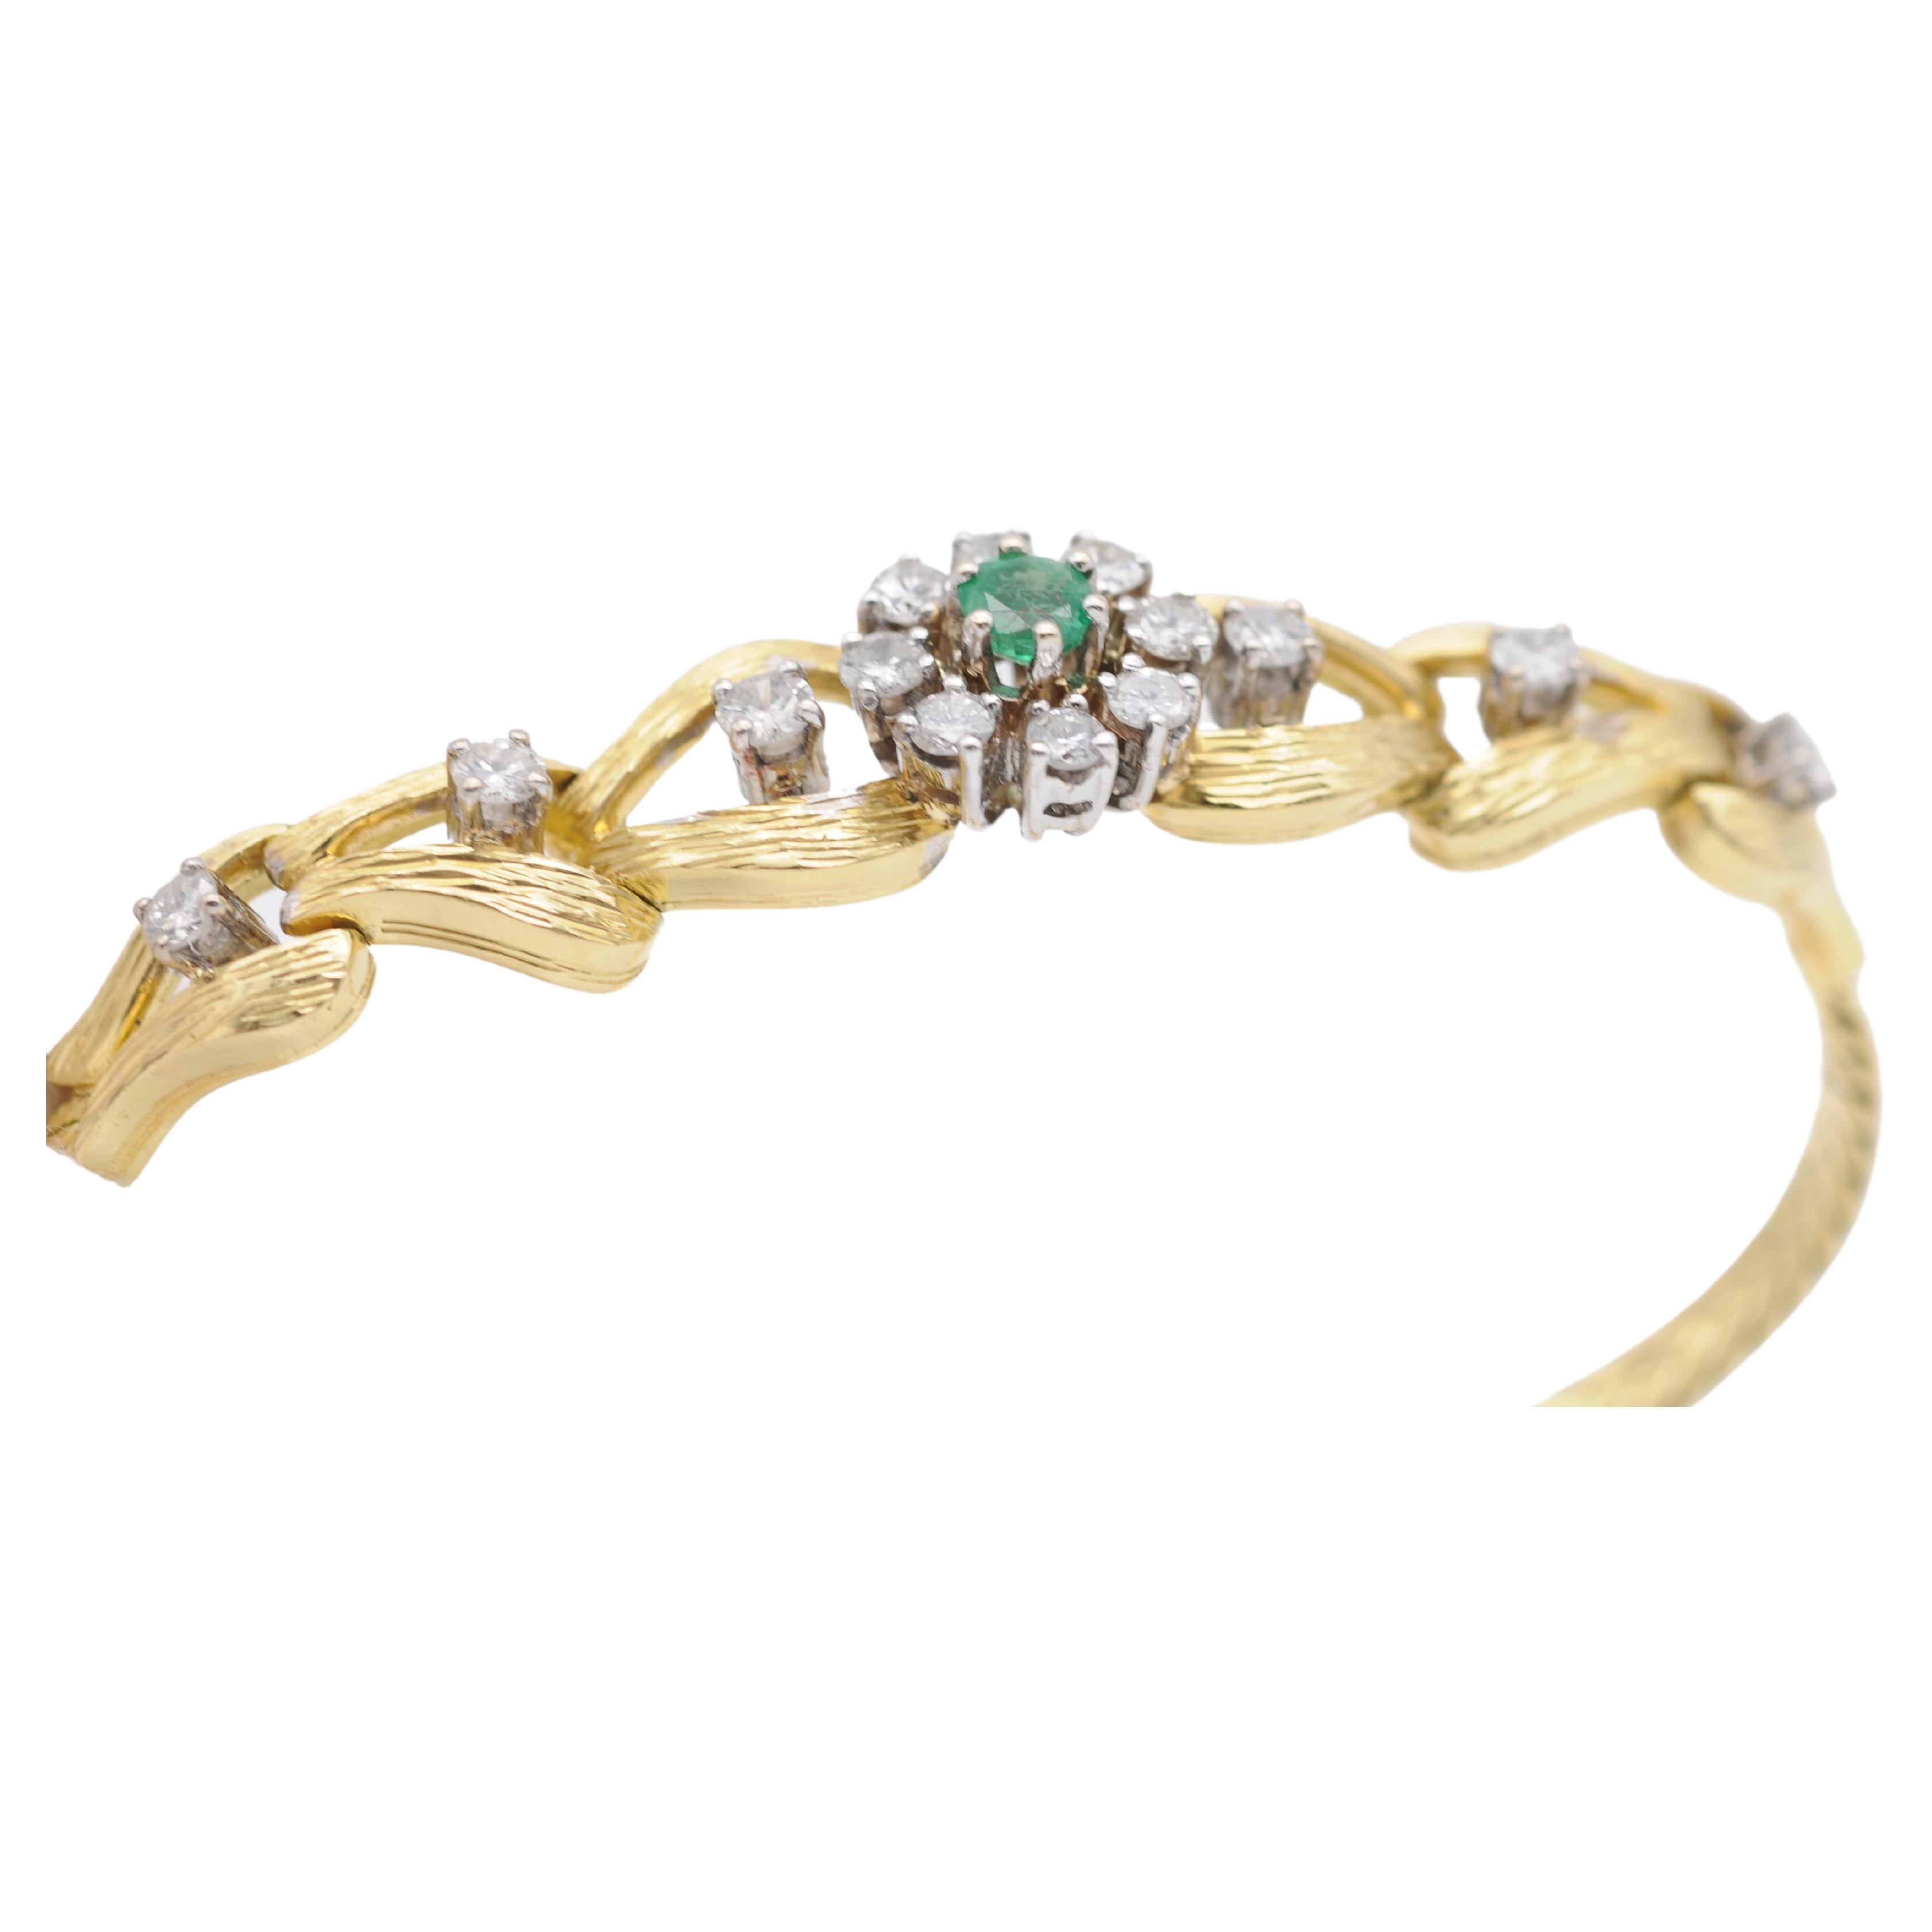 Erleben Sie den Inbegriff von Luxus und Eleganz mit diesem atemberaubenden, edlen Armband aus 18 Karat Gold mit einem faszinierenden Smaragd und schillernden Diamanten. Dieses Armband ist ein wahres Kunstwerk mit einem zeitlosen Design, das